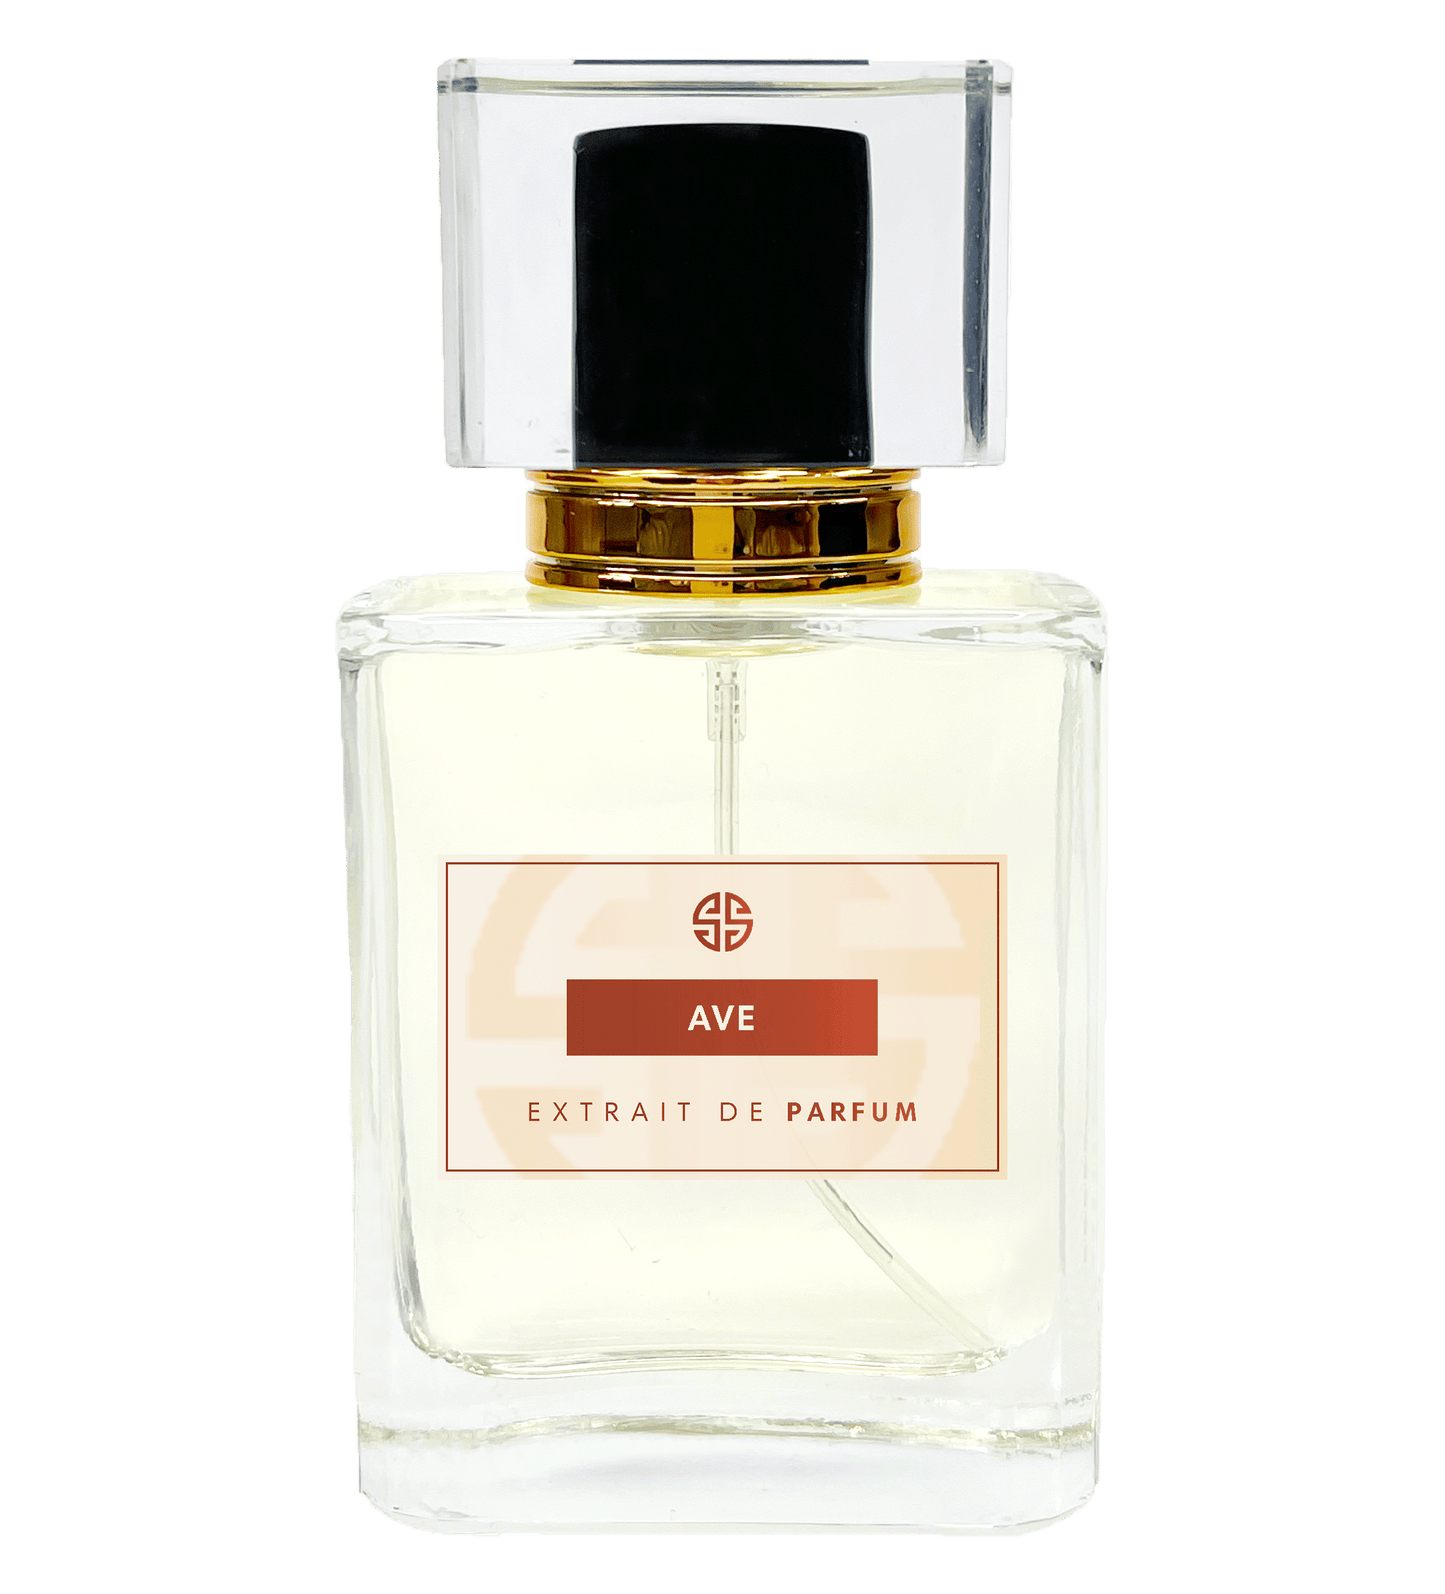 Aventus Parfum parfum - Similar Scent AVE - undefined